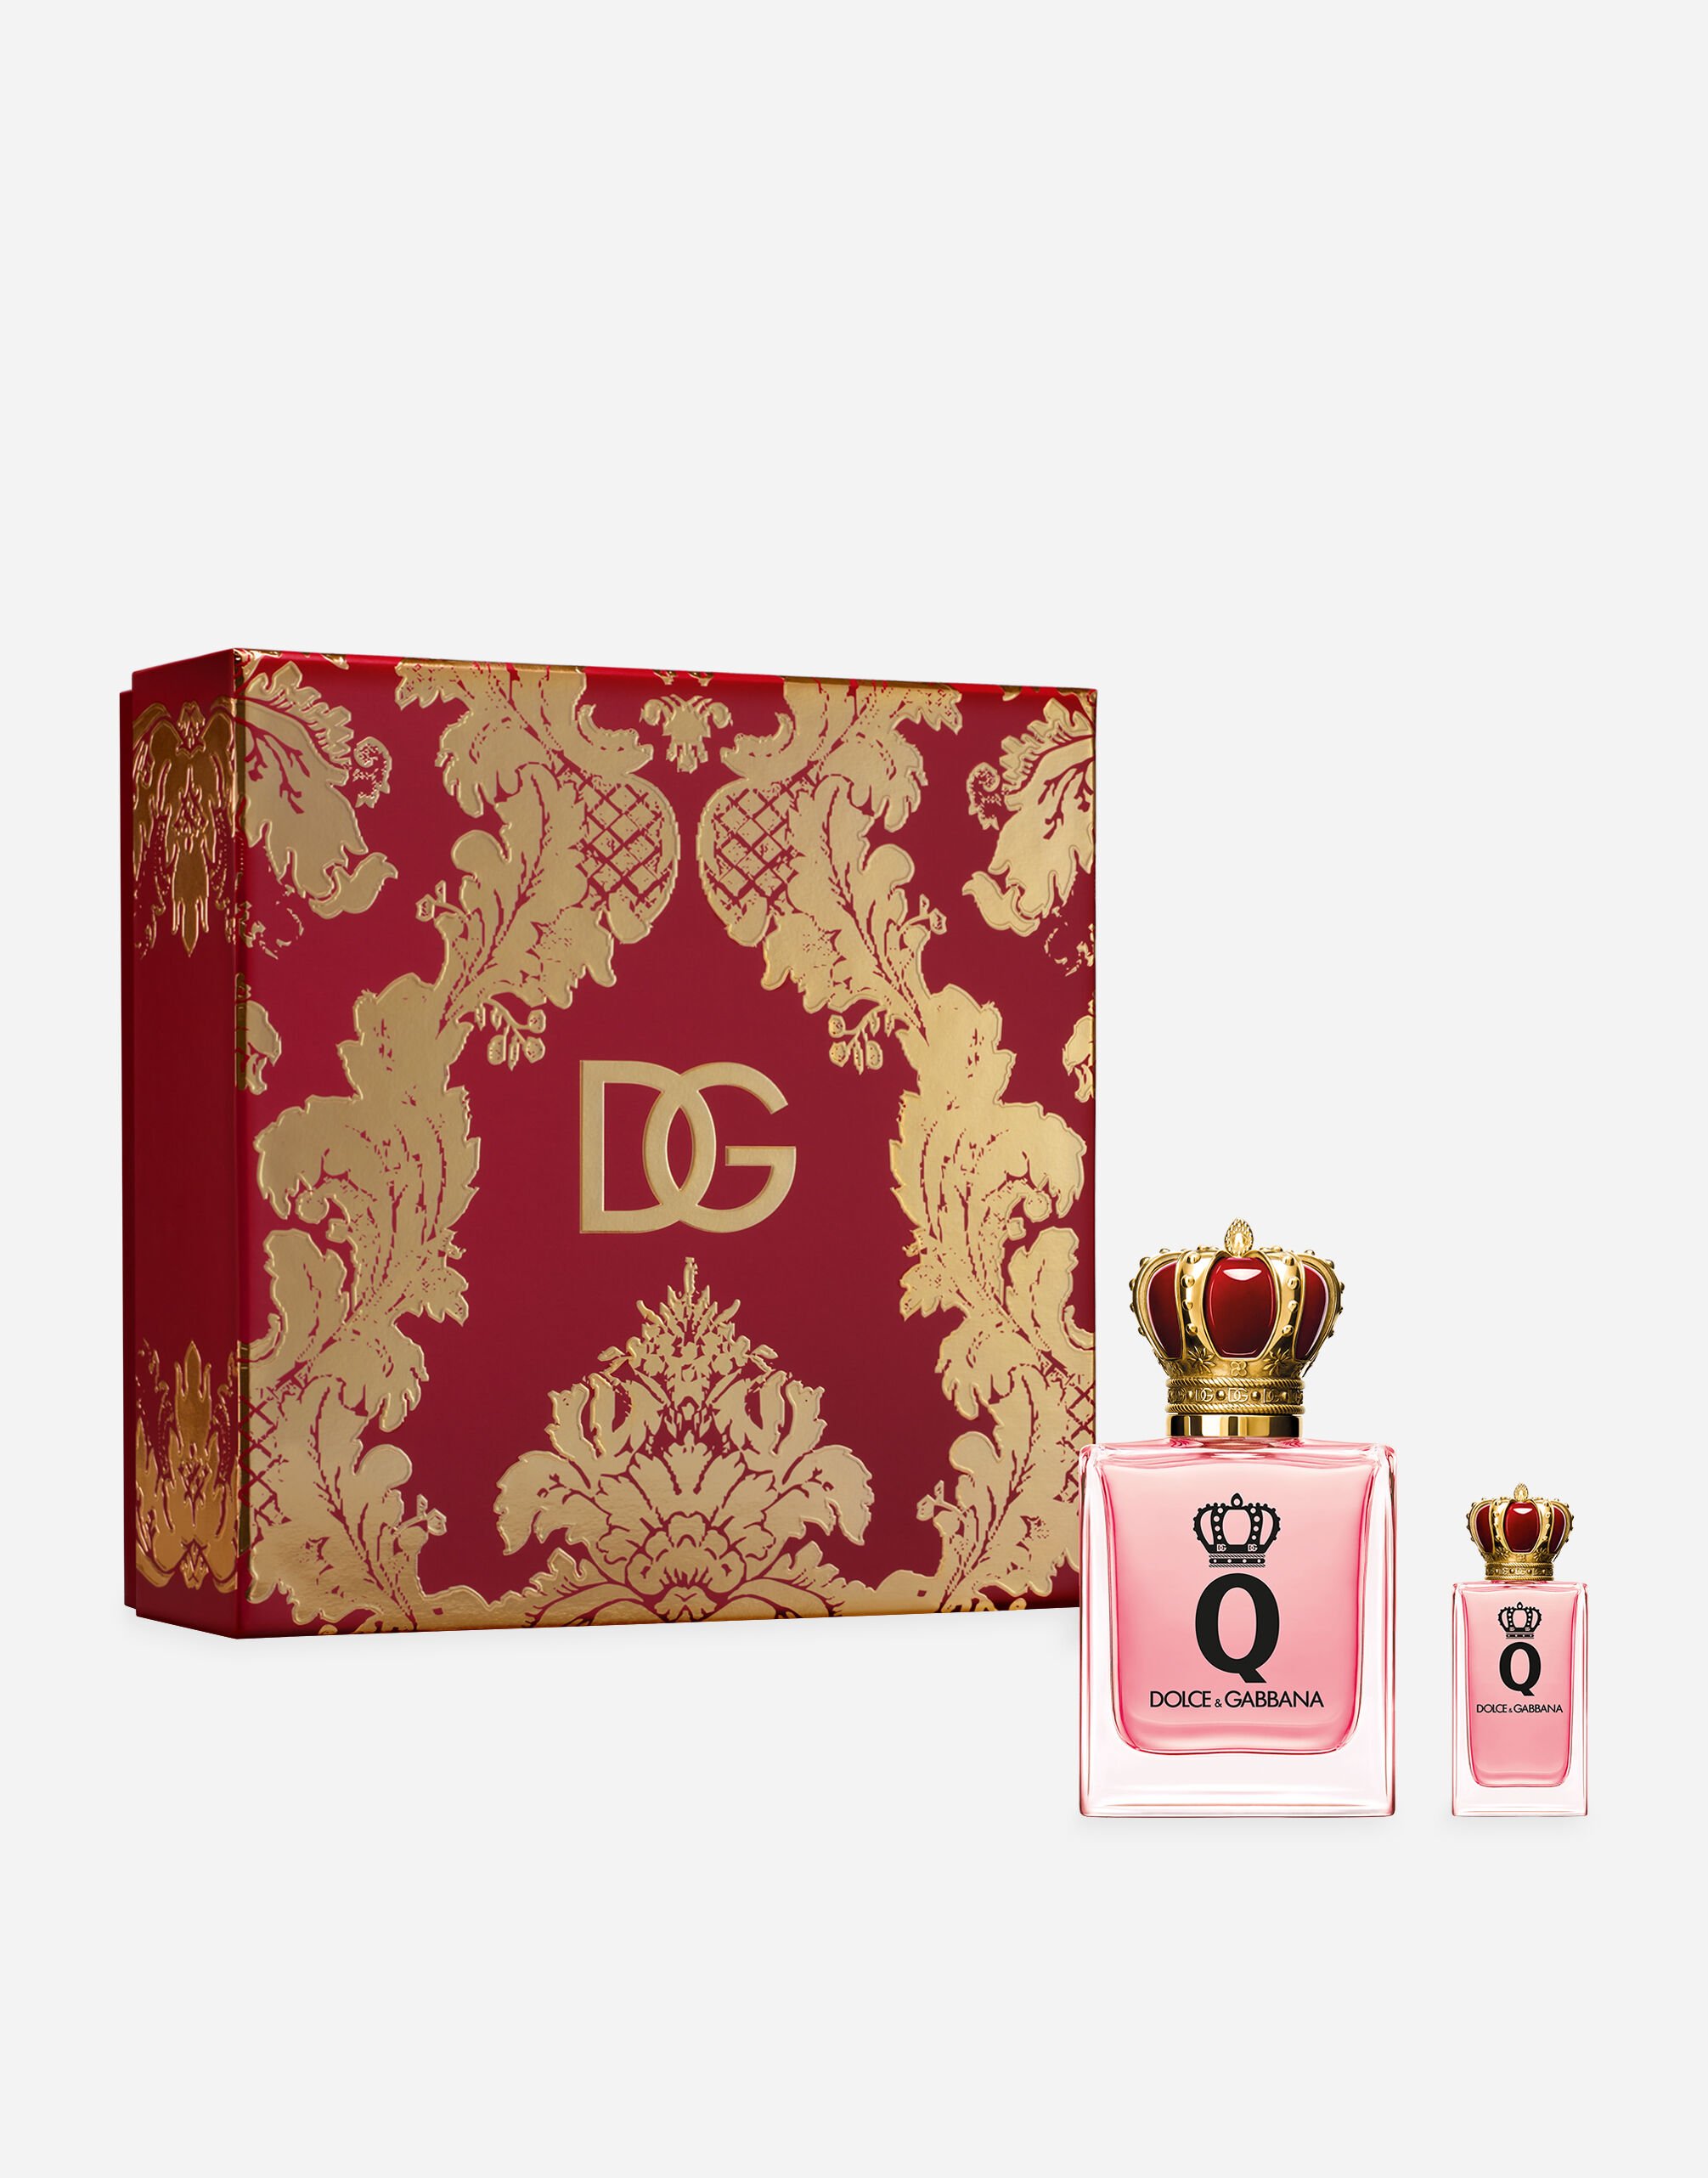 Dolce & Gabbana Coffret Exclusif Q by Dolce&Gabbana Eau de Parfum - VP003BVP000